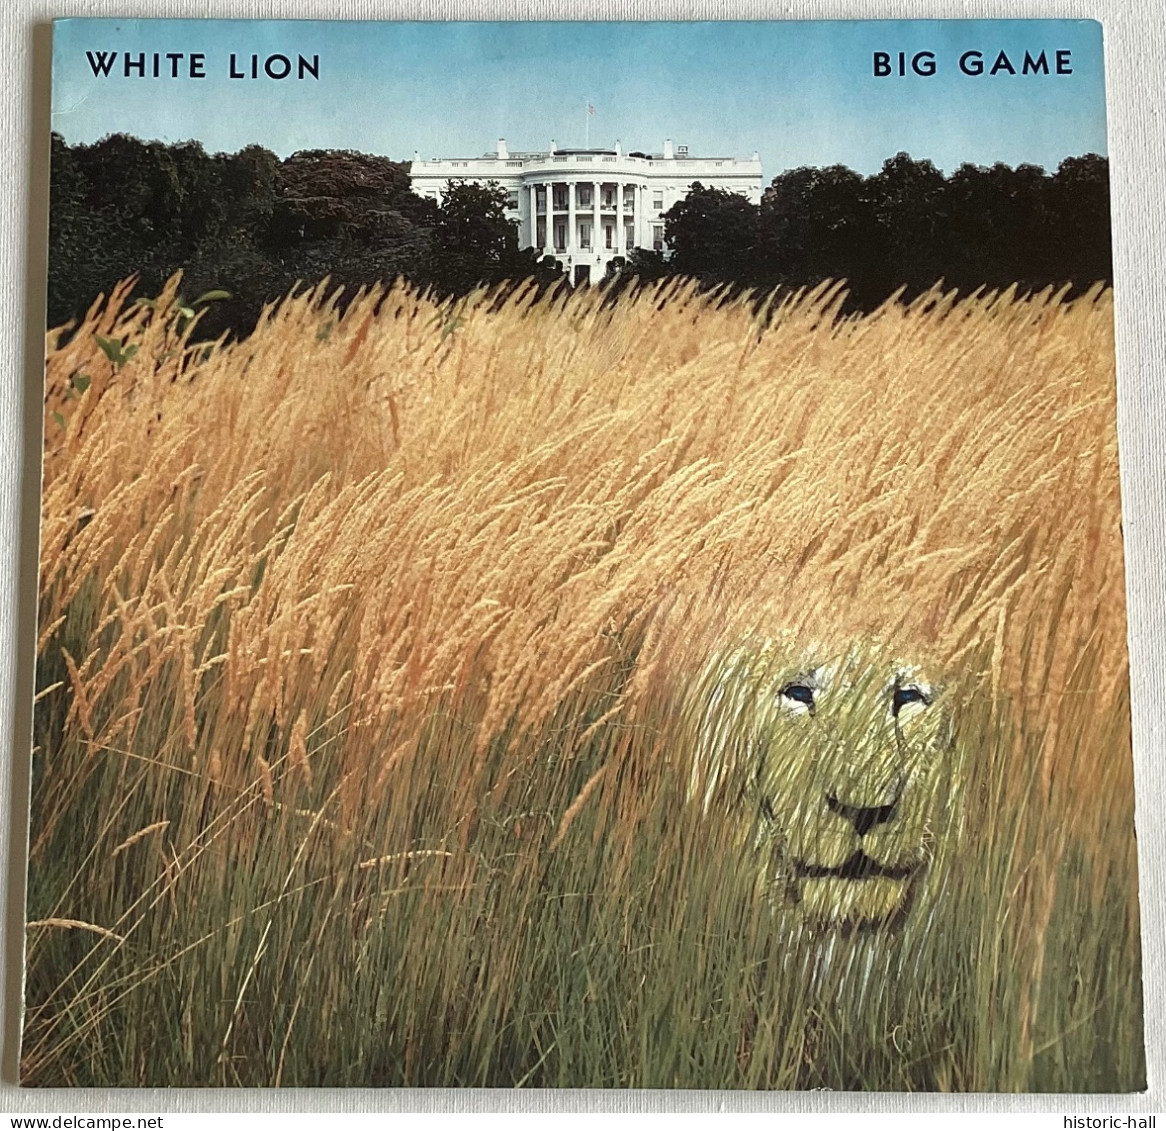 WHITE LION - Big Game - LP - 1989 - German Press - Hard Rock & Metal